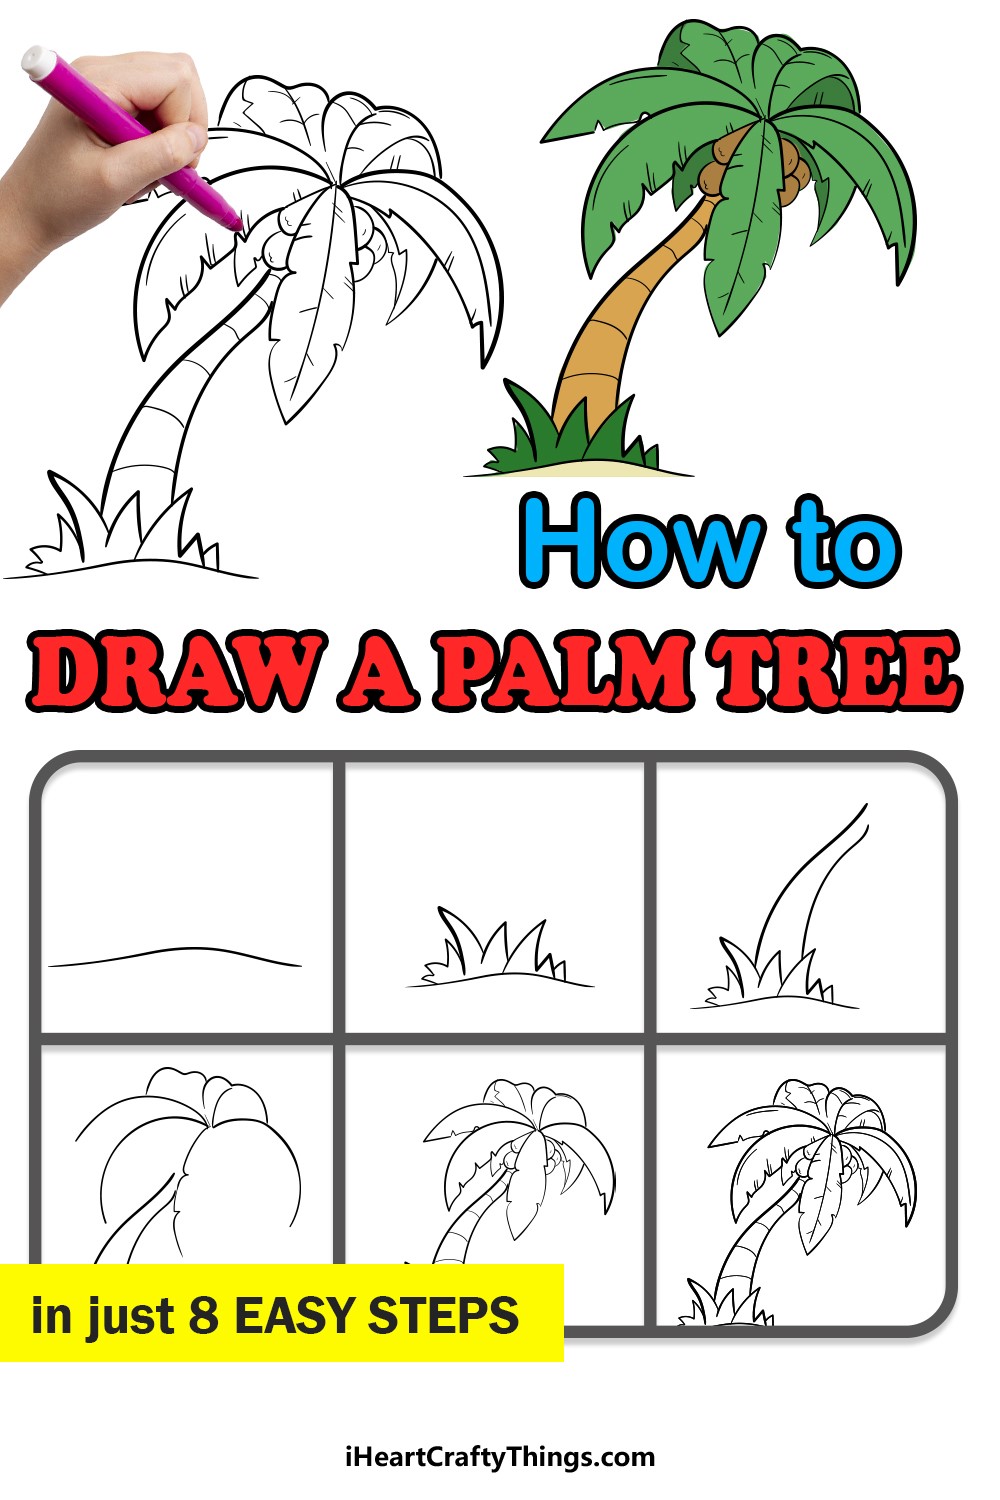 Palmen-Idee 9 zeichnen ideen